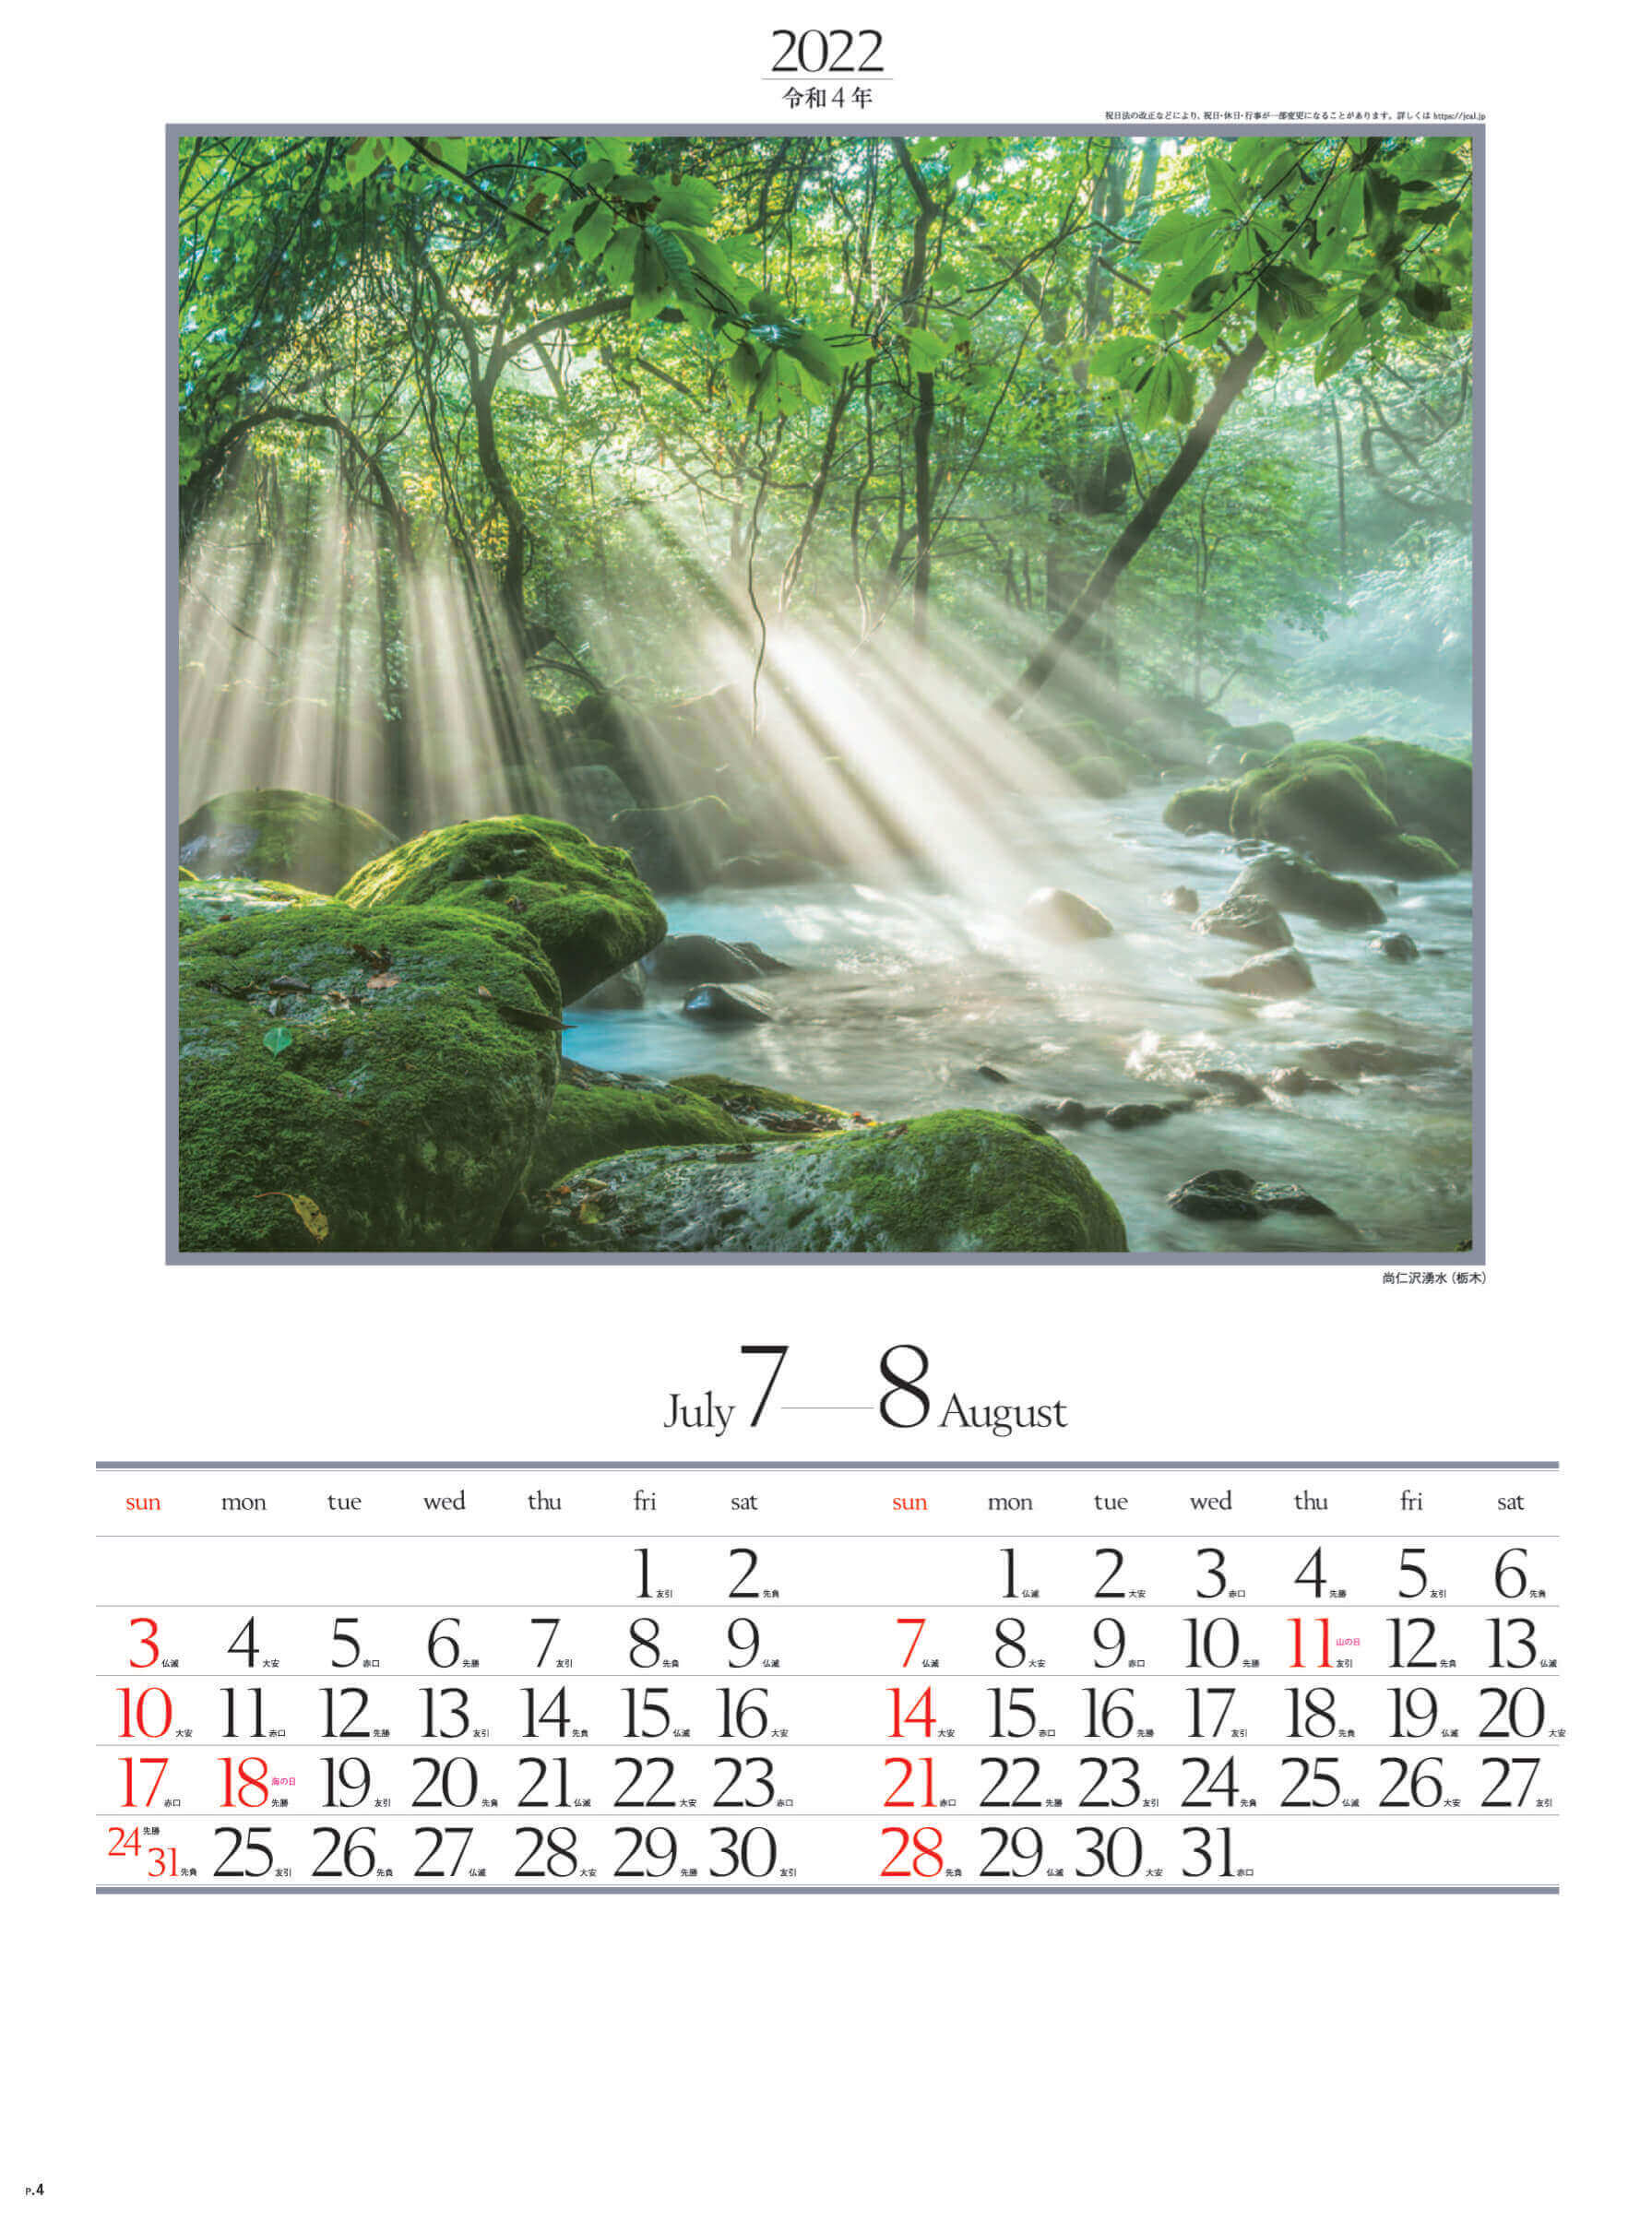 7-8月 尚仁沢湧水(栃木) 四季六彩 2022年カレンダーの画像